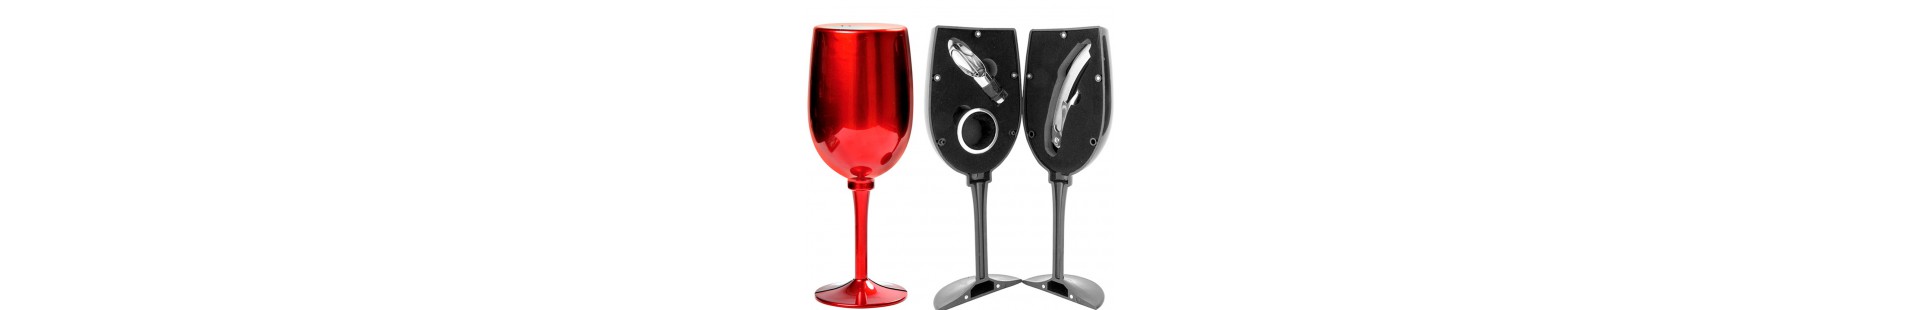 Accesorios y utensilios para vino